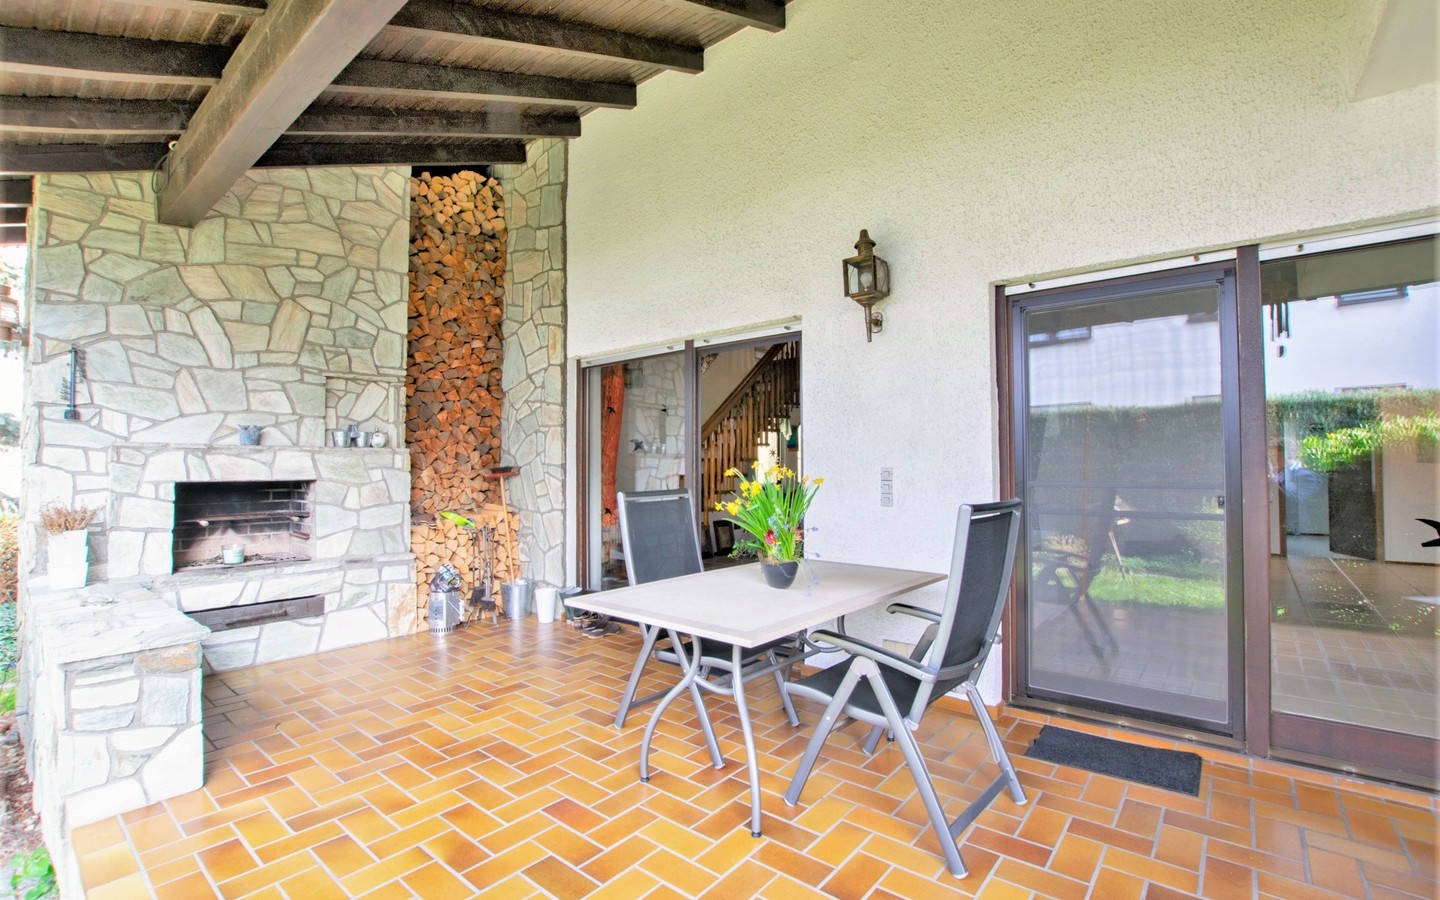 Terrasse - Für den Urlaub zu Hause: Einfamilienhaus mit mediterranem Charme!